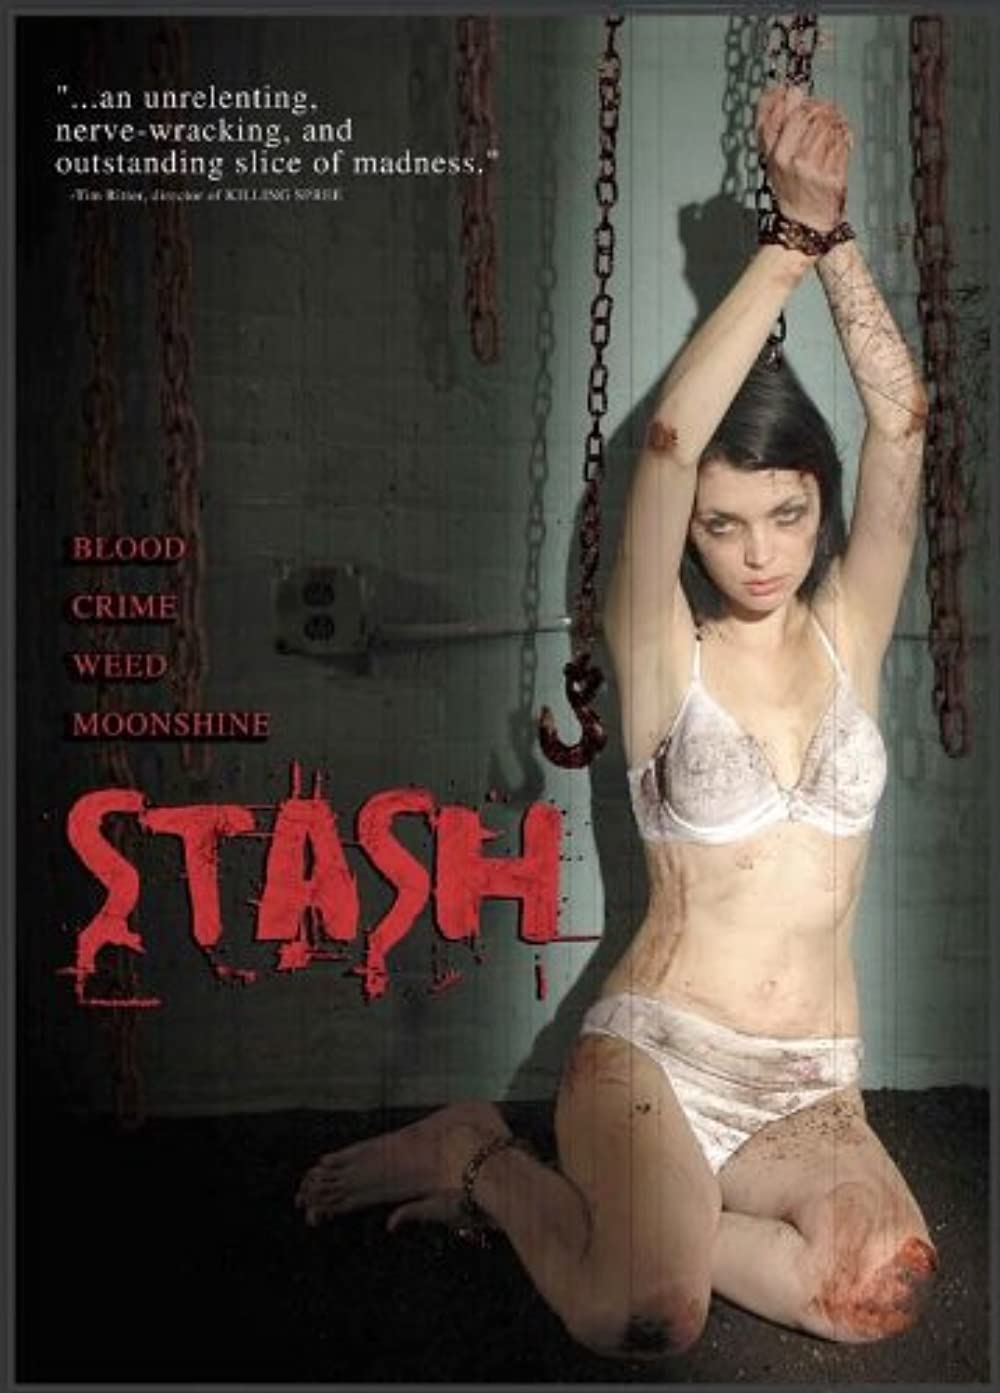 Download Stash Movie | Stash